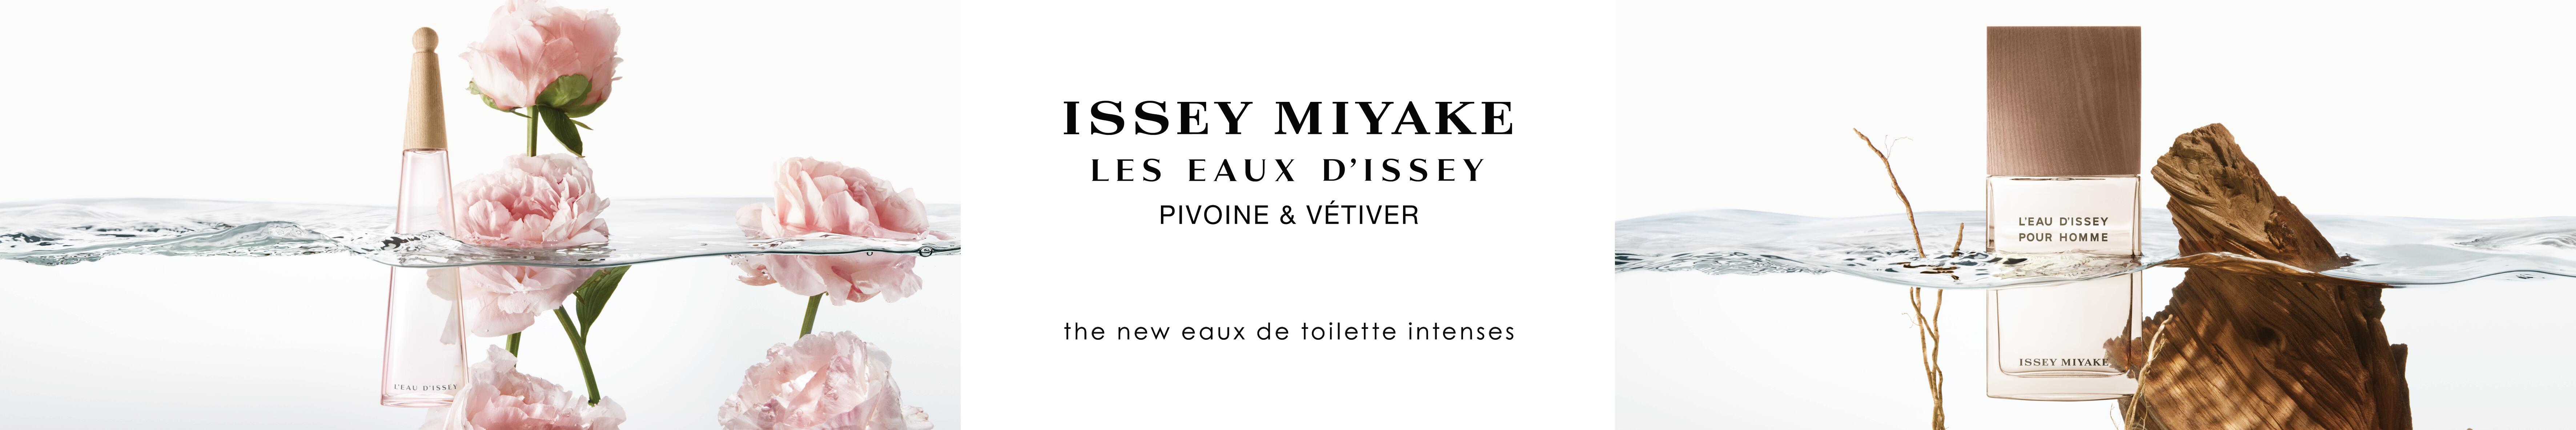 Hoteles con encanto Rusticae Banner Issey Miyake1